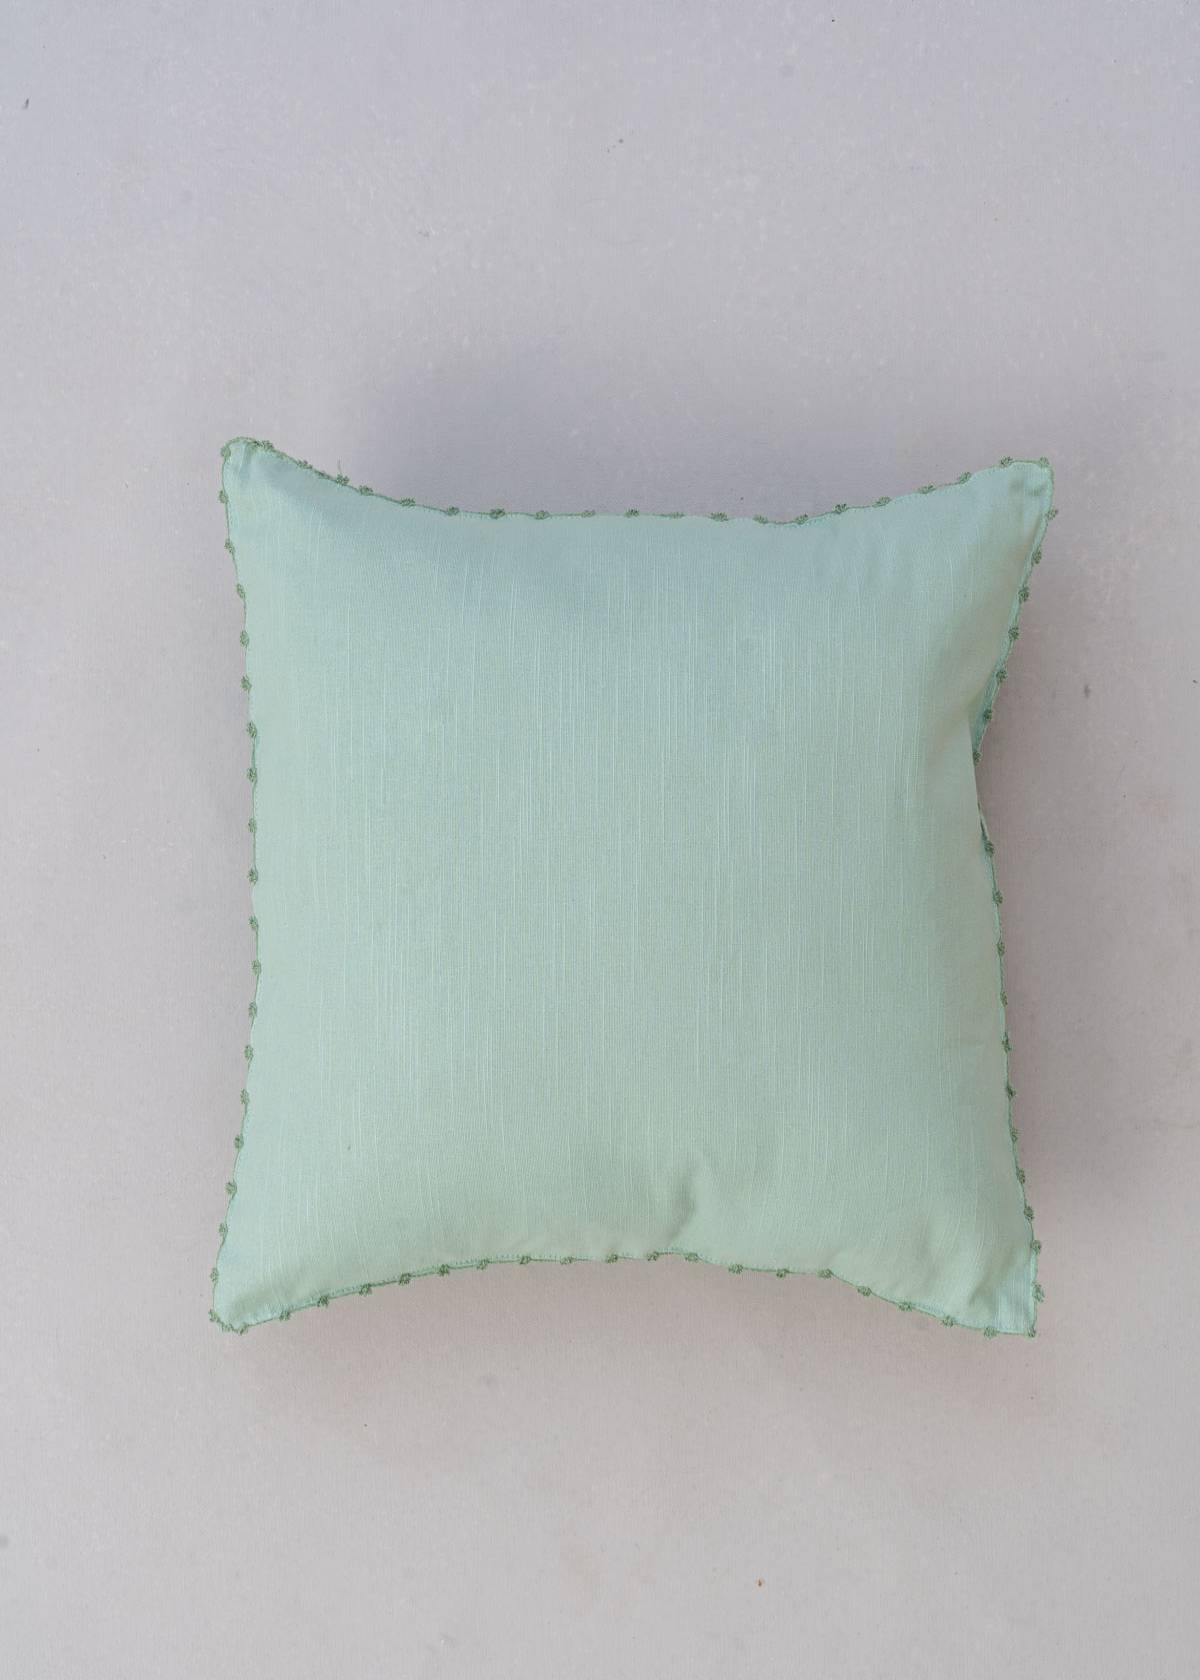 Gingko Nile Blue 16" , Nile Blue 16" , Maidenhair 16" , Cream Solid 16" Set Of 4 Combo Cotton Cushion Cover - Nile Blue, Cream